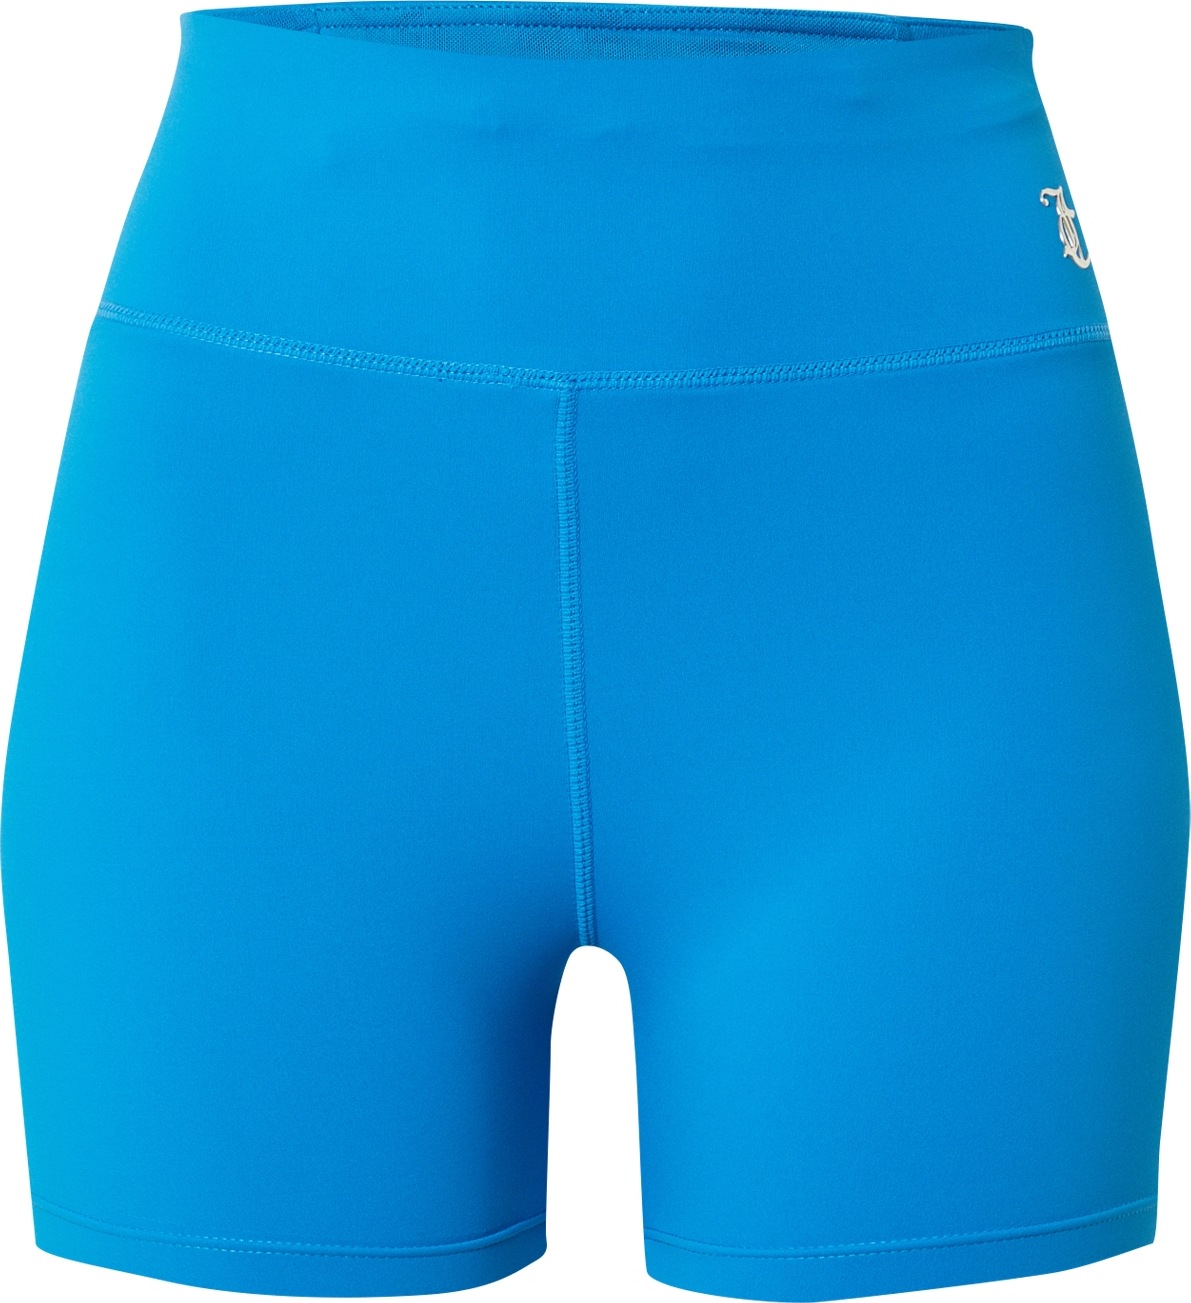 Sportovní kalhoty 'LIZA' Juicy Couture Sport nebeská modř / stříbrná